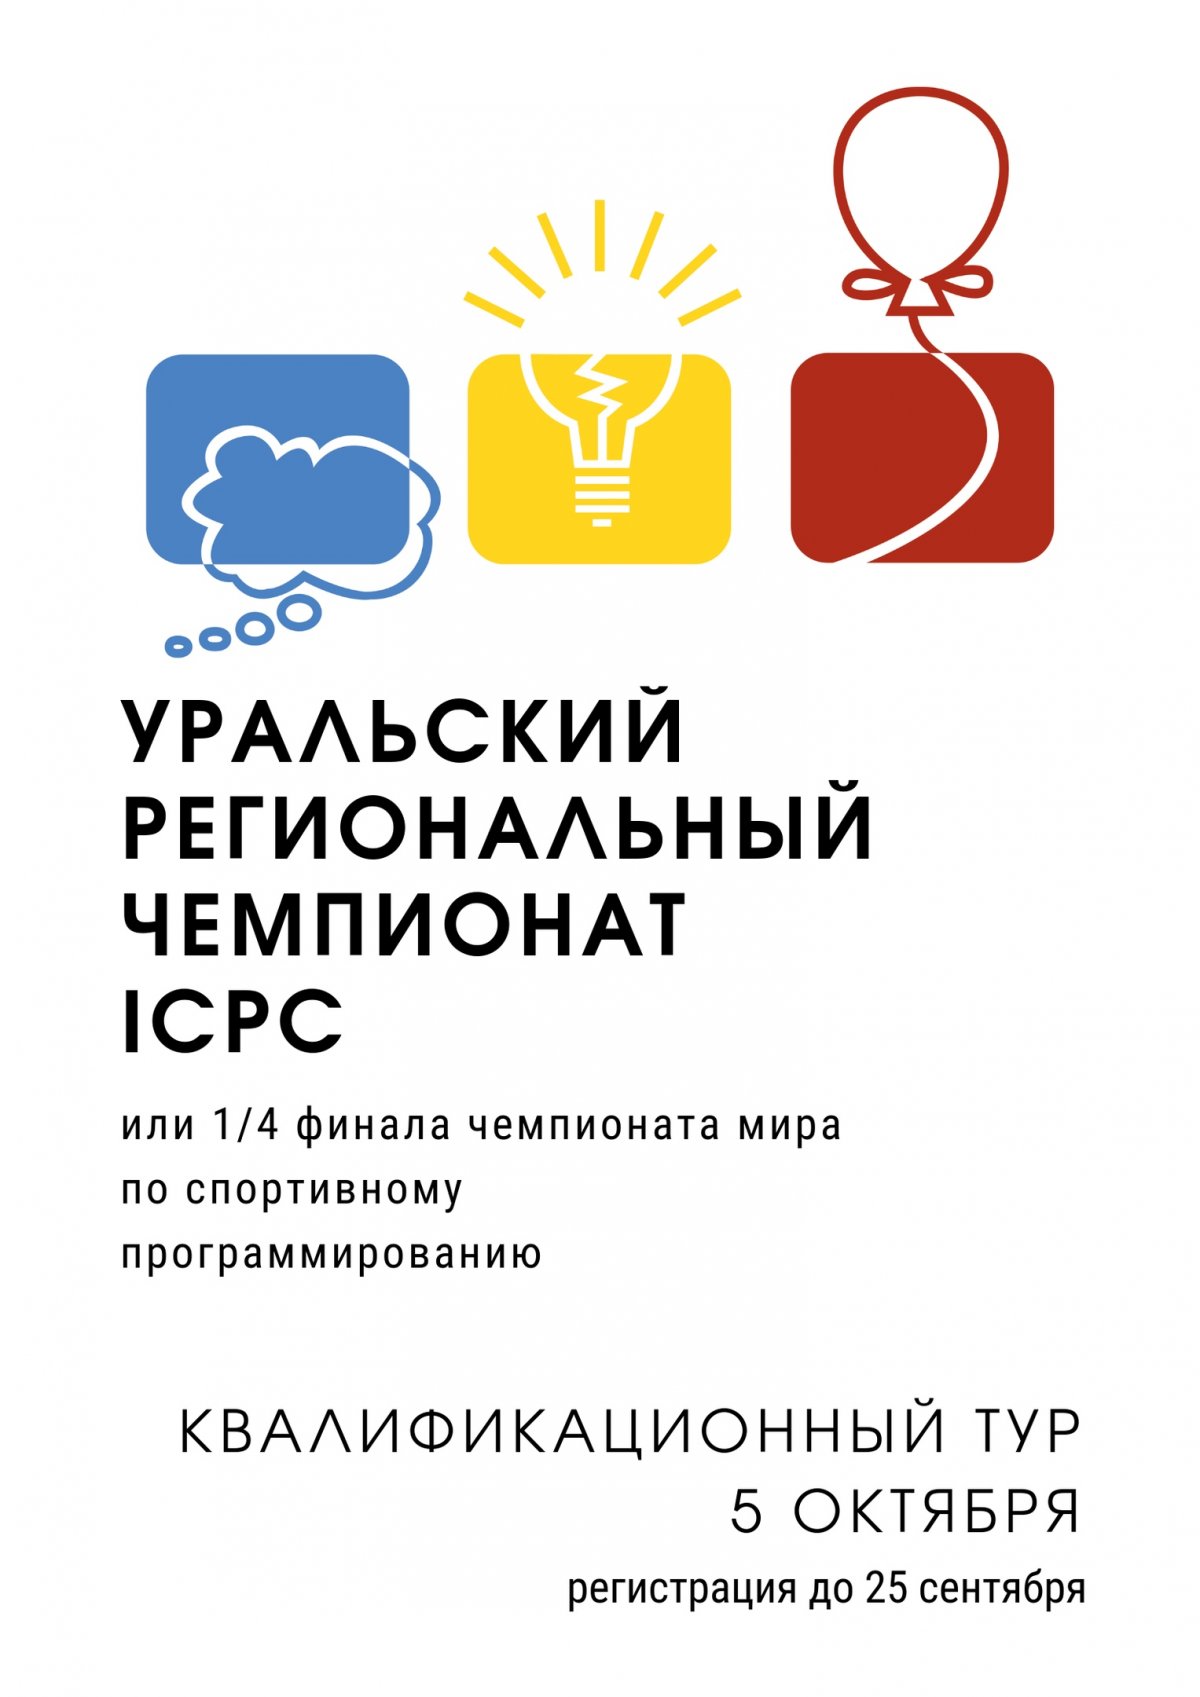 Приближается Уральский региональный чемпионат ICPC — 1/4 финала чемпионата мира по спортивному программированию.